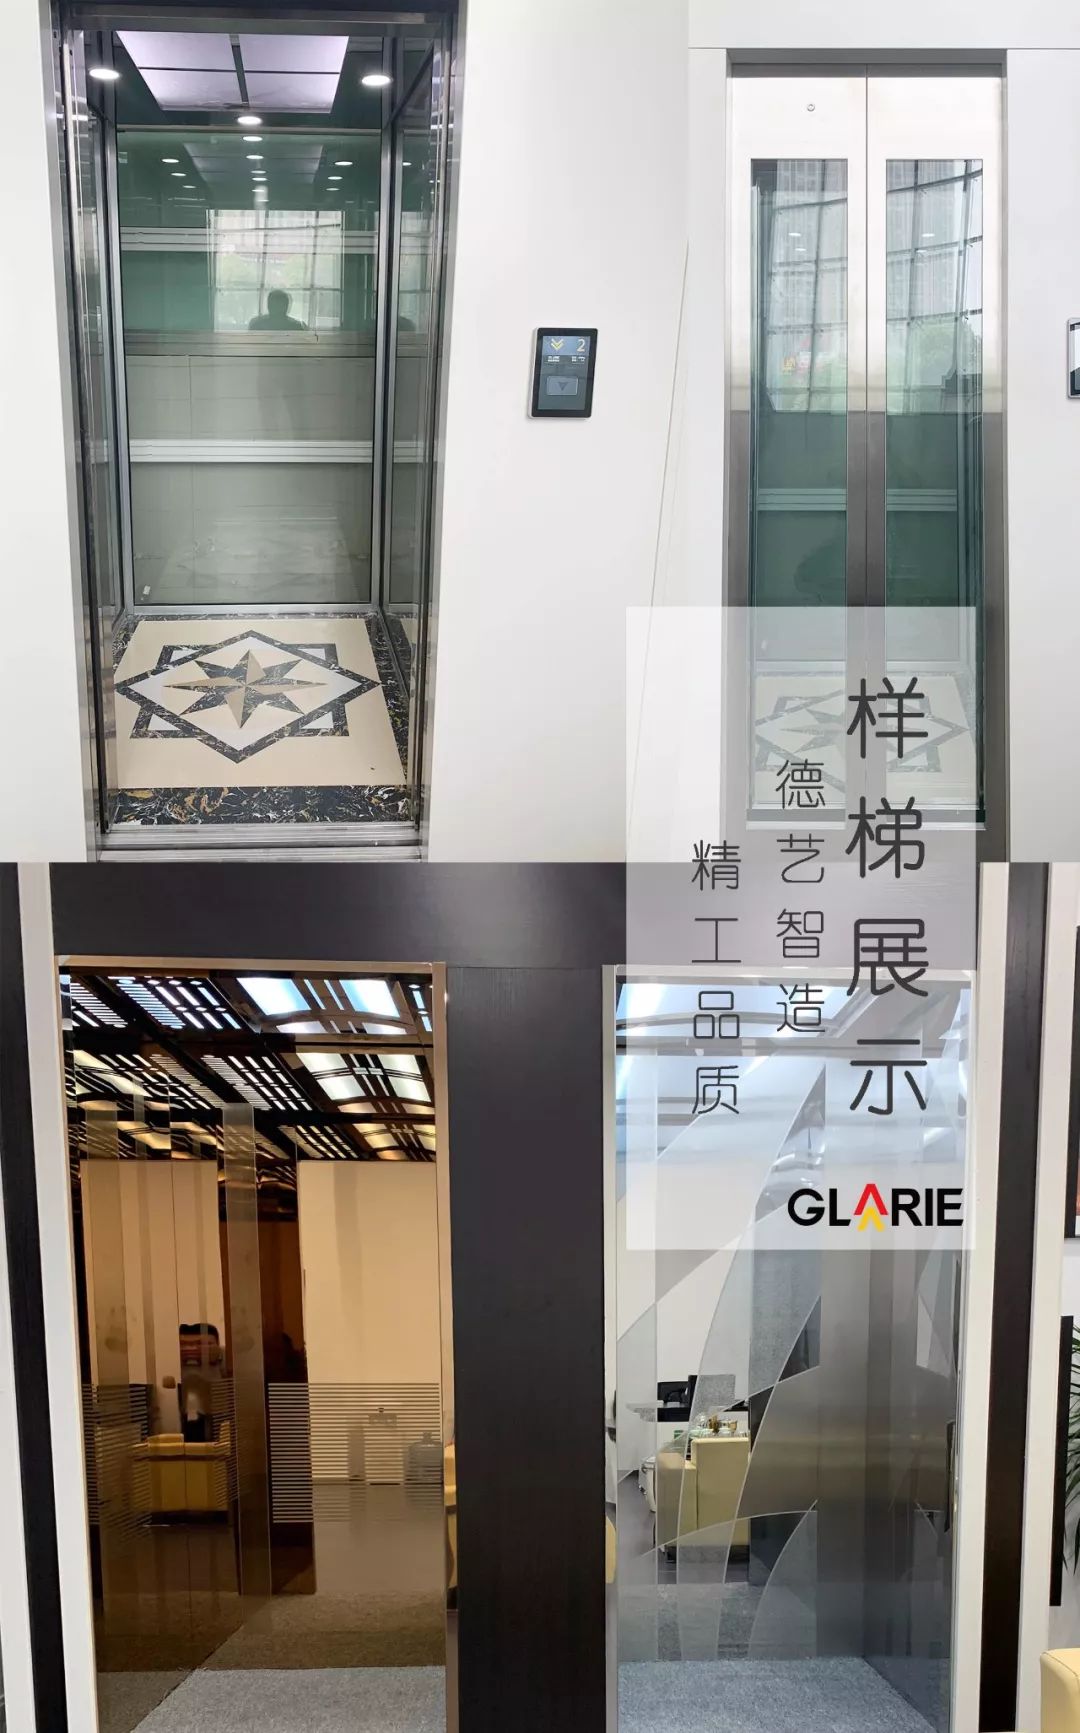 近日,歌拉瑞迎来了福州,镇江两家9s别墅电梯体验馆的盛大开业!